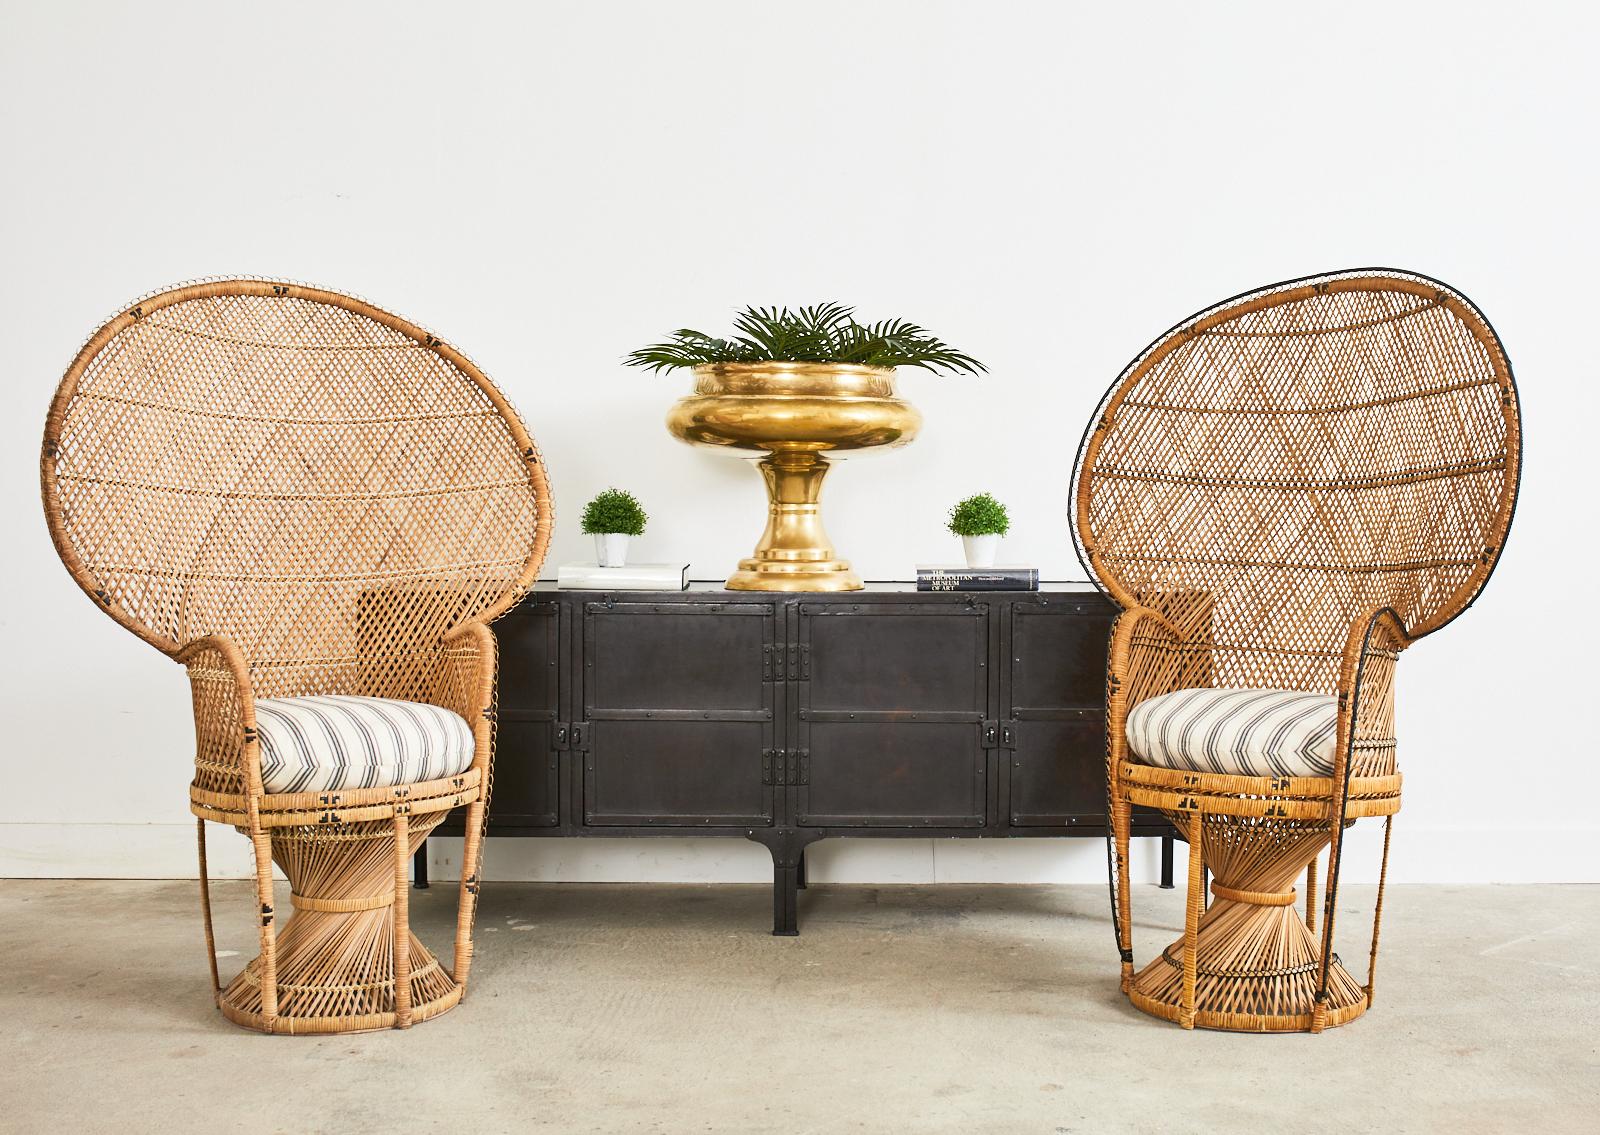 Iconic Mid-Century Modern in der Nähe Paar Französisch Bohemian Emmanuelle Pfau Stühle. Hergestellt aus geflochtenem Rattan mit subtilen Unterschieden im Yin-Yang-Stil. Ein Stuhl hat eine schwarze Umrandung und ein schwarzes Korbgeflecht. Der andere